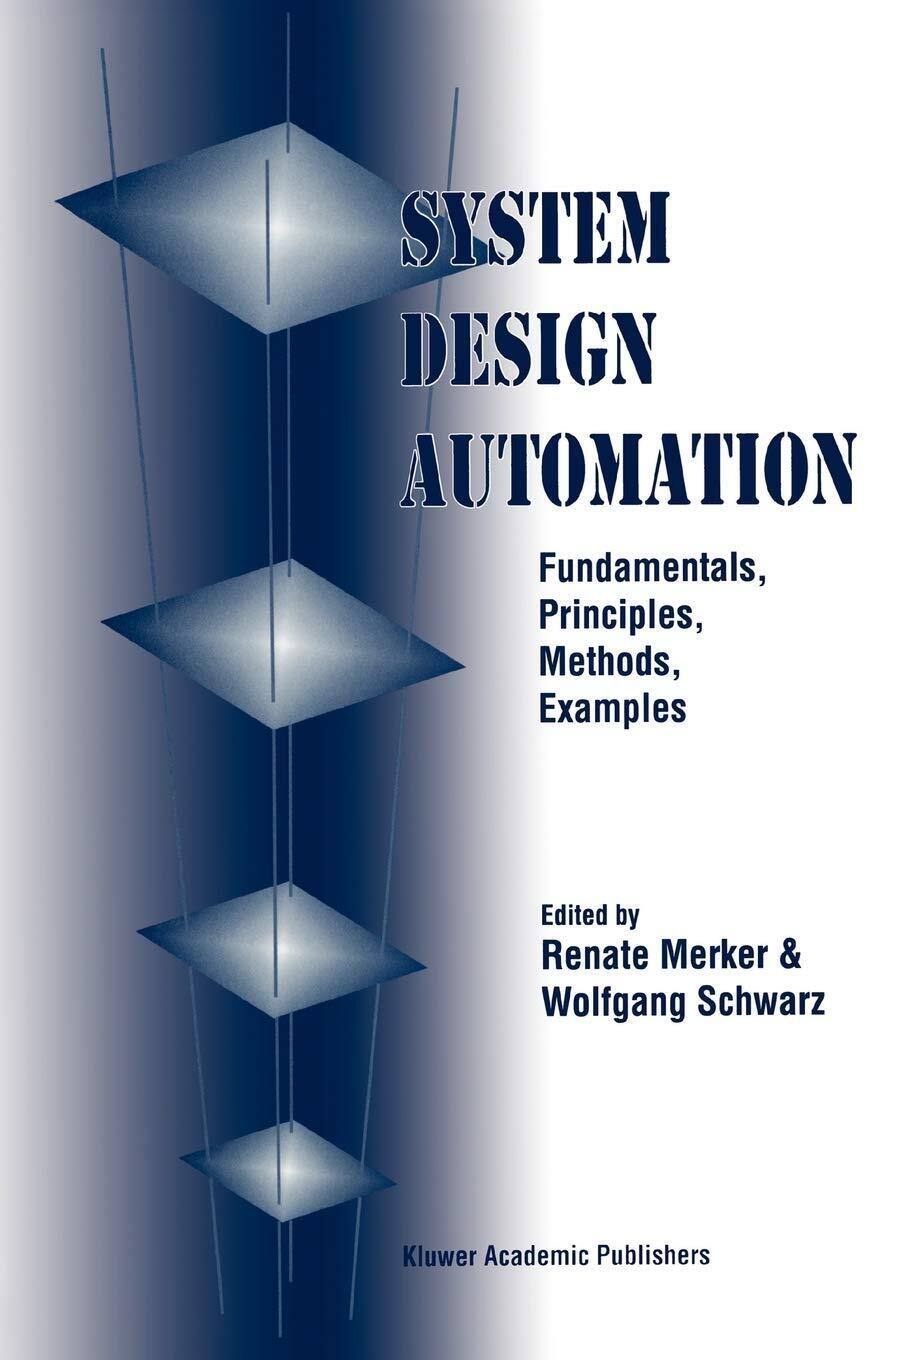 System Design Automation - Renate Merker - Springer, 2010